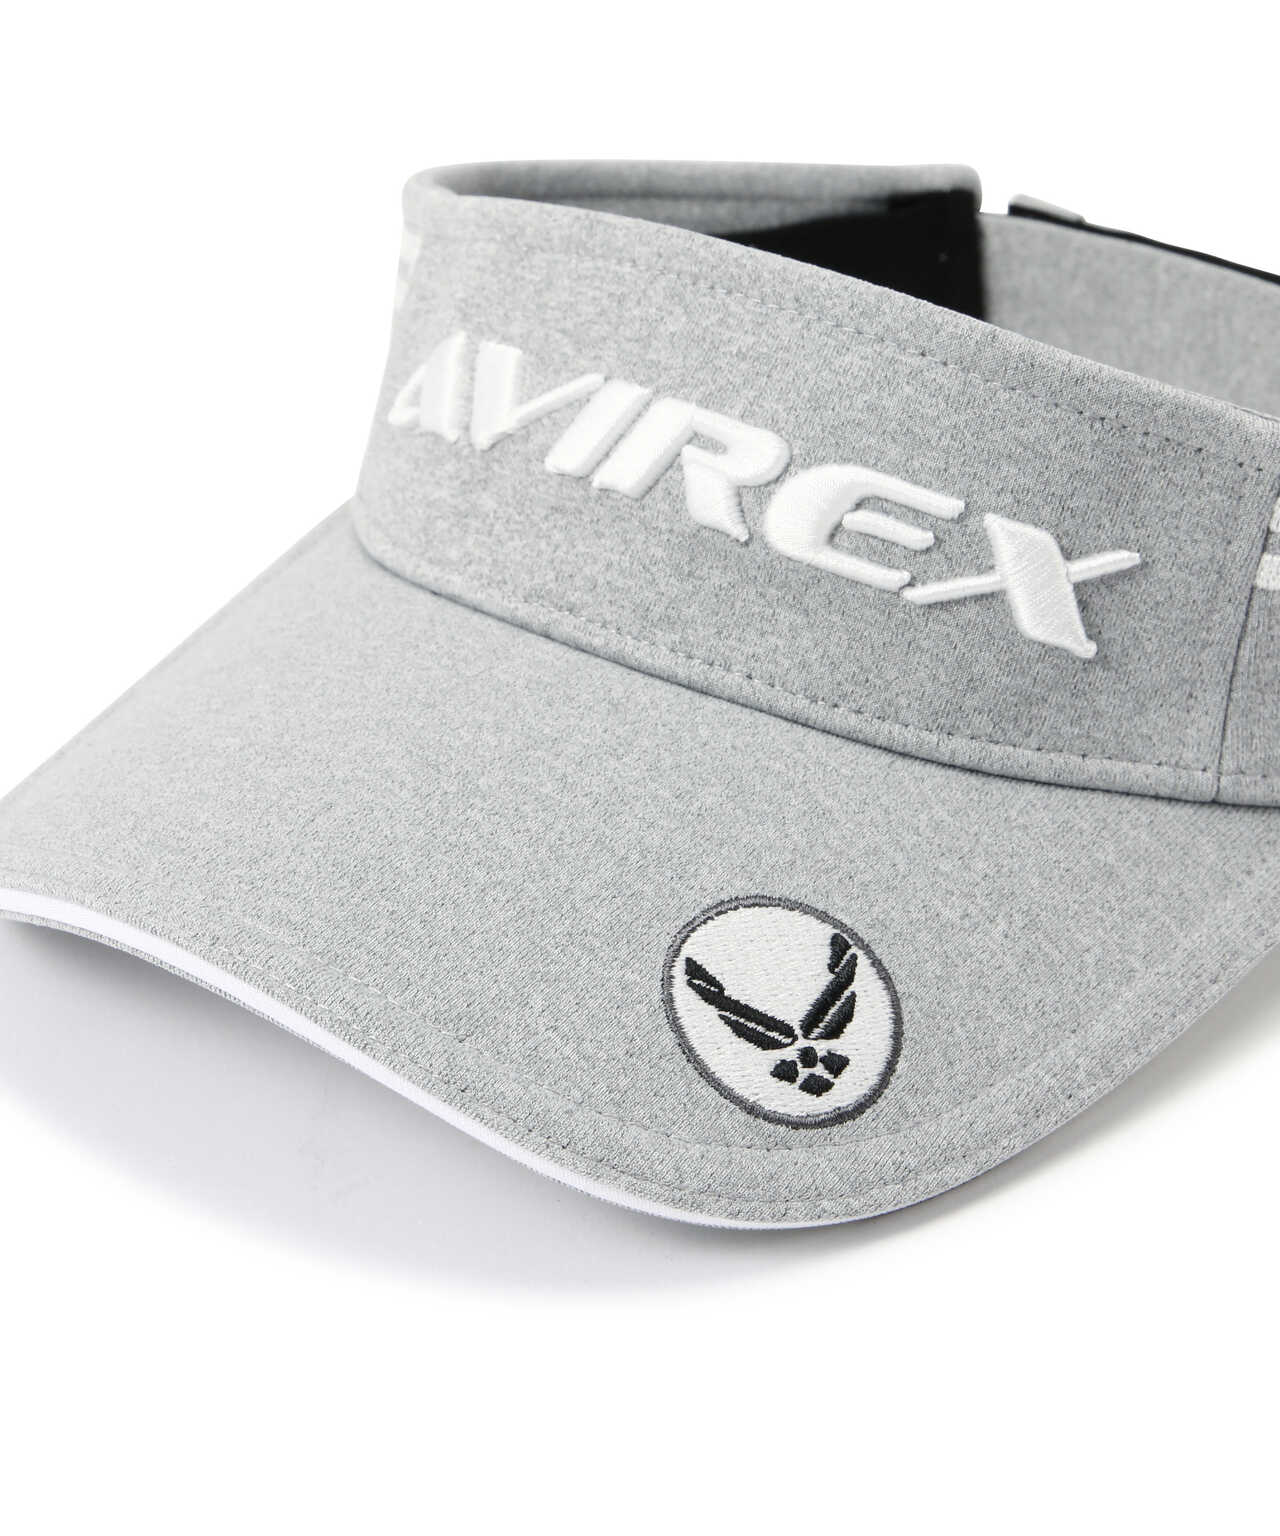 《AVIREX GOLF》ブーストパッド VISOR/サンバイザー/ゴルフ